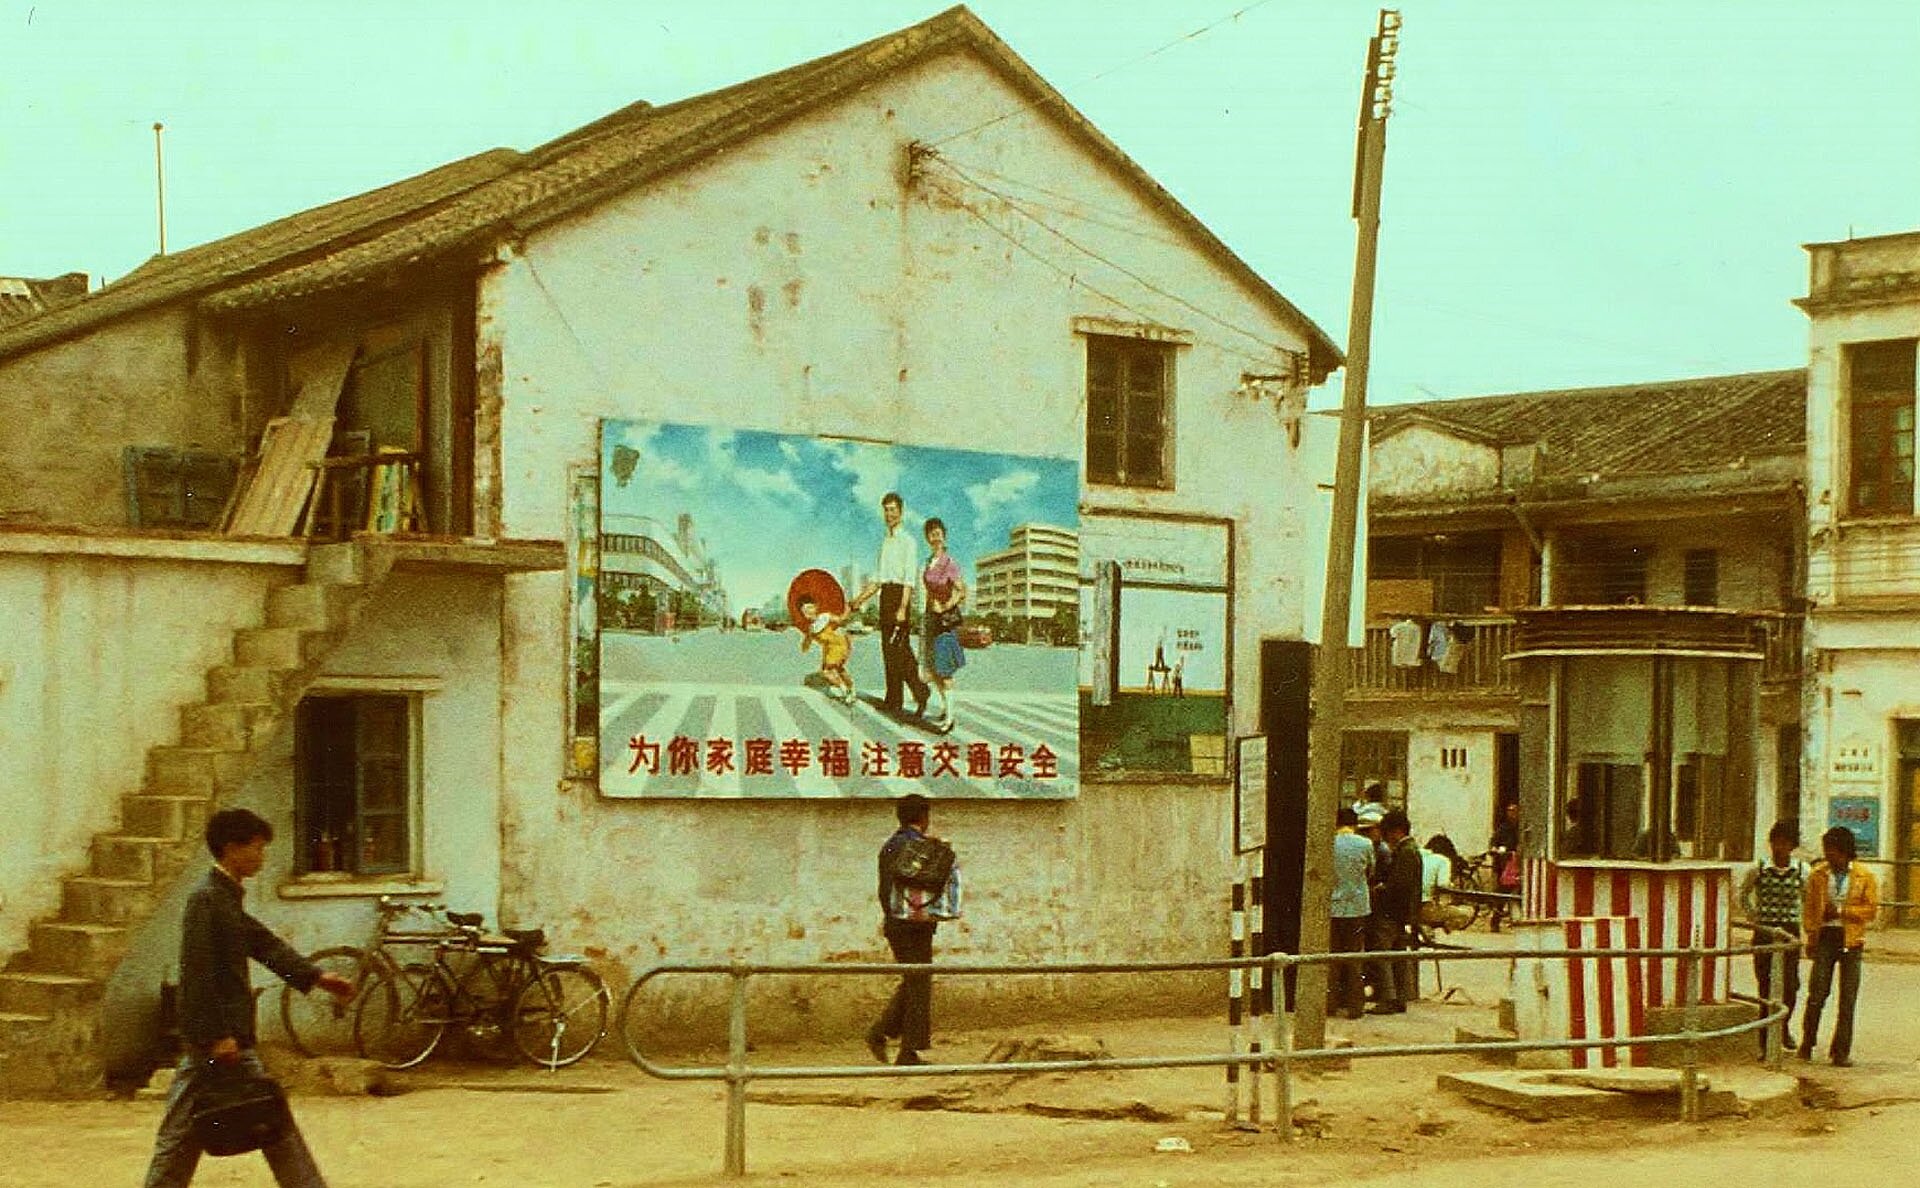 Na zdjęciu ulica, niska zabudowa, na ścianie domu tablica propagandowa. Uśmiechnięta rodzina z jednym dzieckiem.